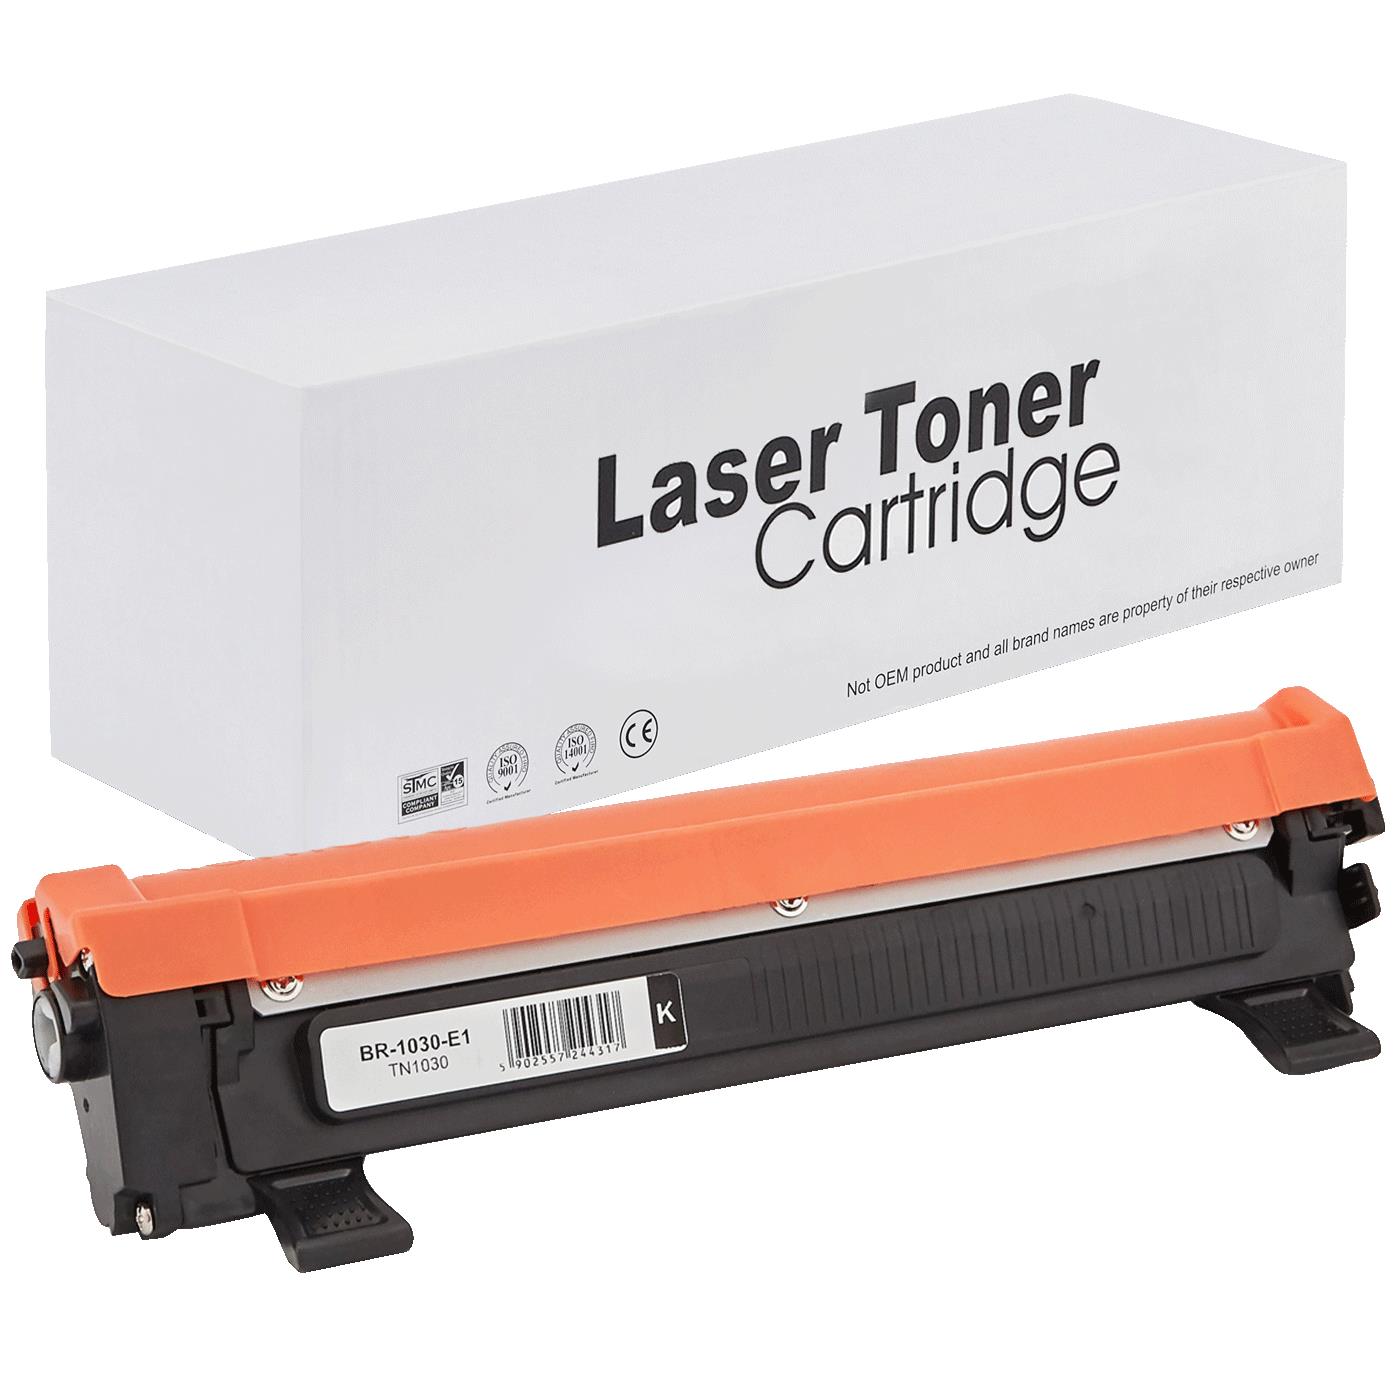 съвместима тонер касета за принтери и печатащи устройства на Brother 1512 Toner BR-1030 | TN1030 / TN1050 / TN-1030. Ниски цени, прецизно изпълнение, високо качество.